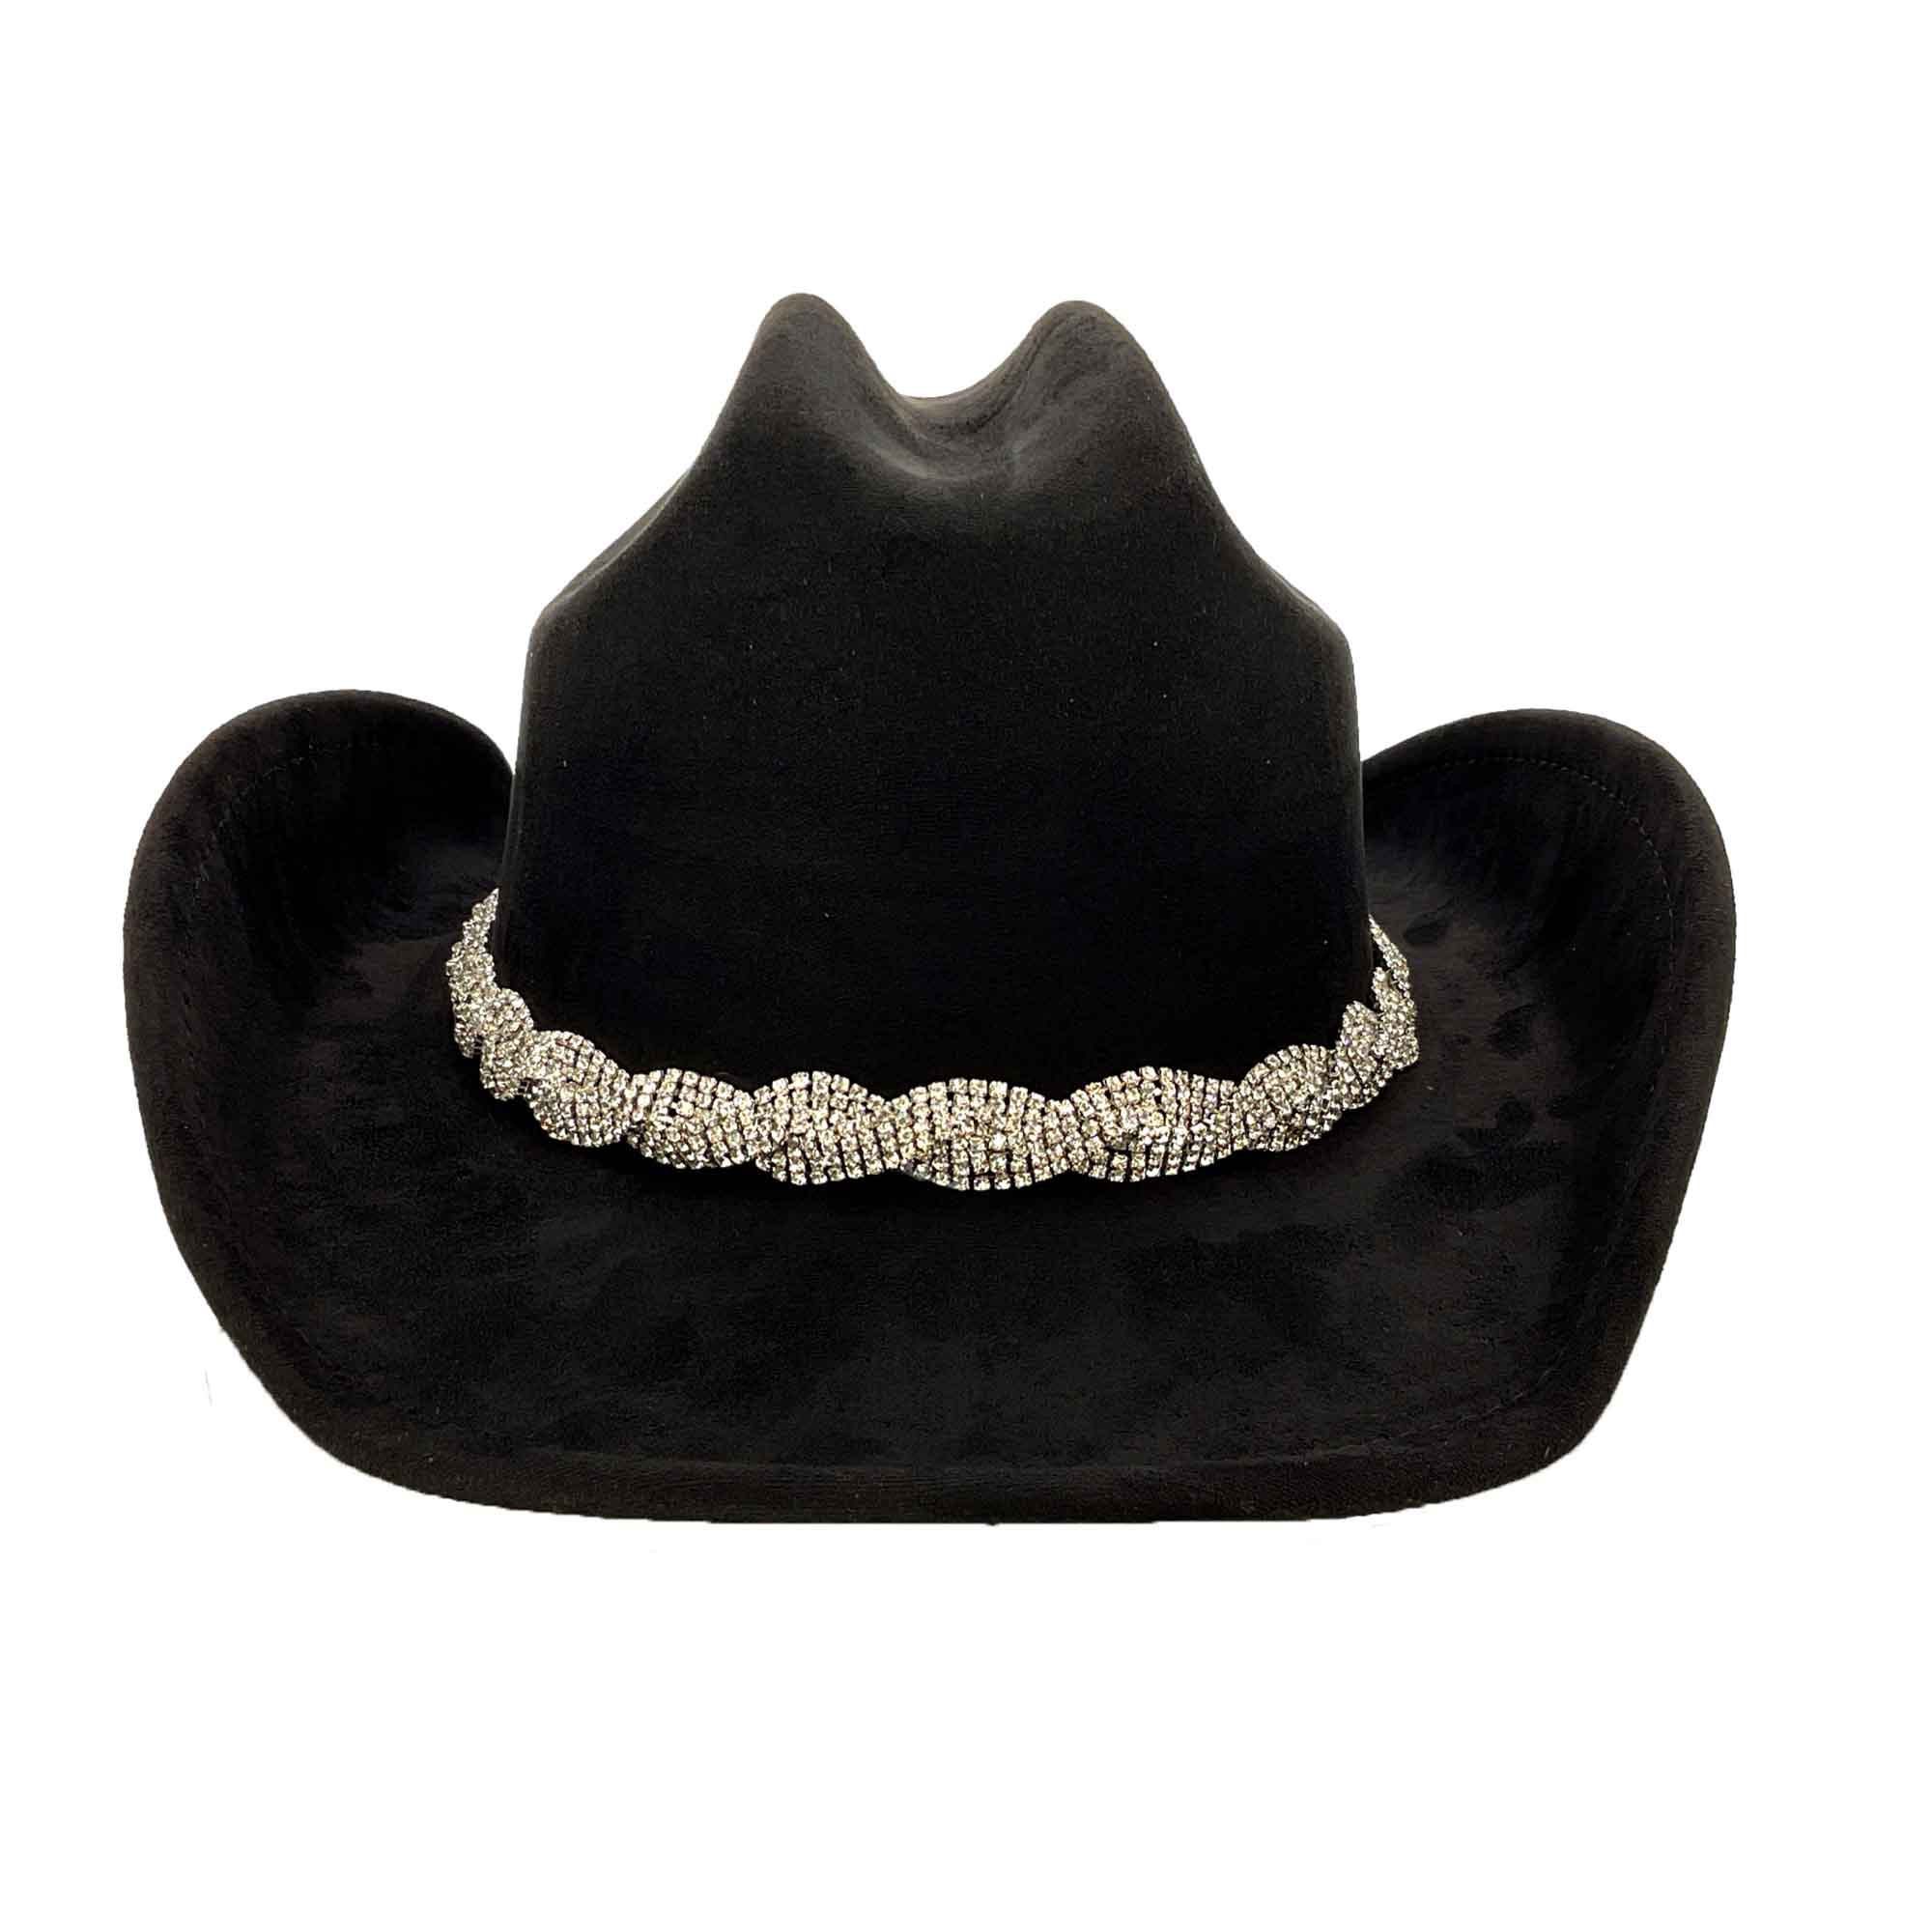 Faux Suede Western Hat with Braided Rhinestone Band - Boardwalk Style Cowboy Hat Boardwalk Style Hats DA3192-BLK Black Medium (57.5 cm) 